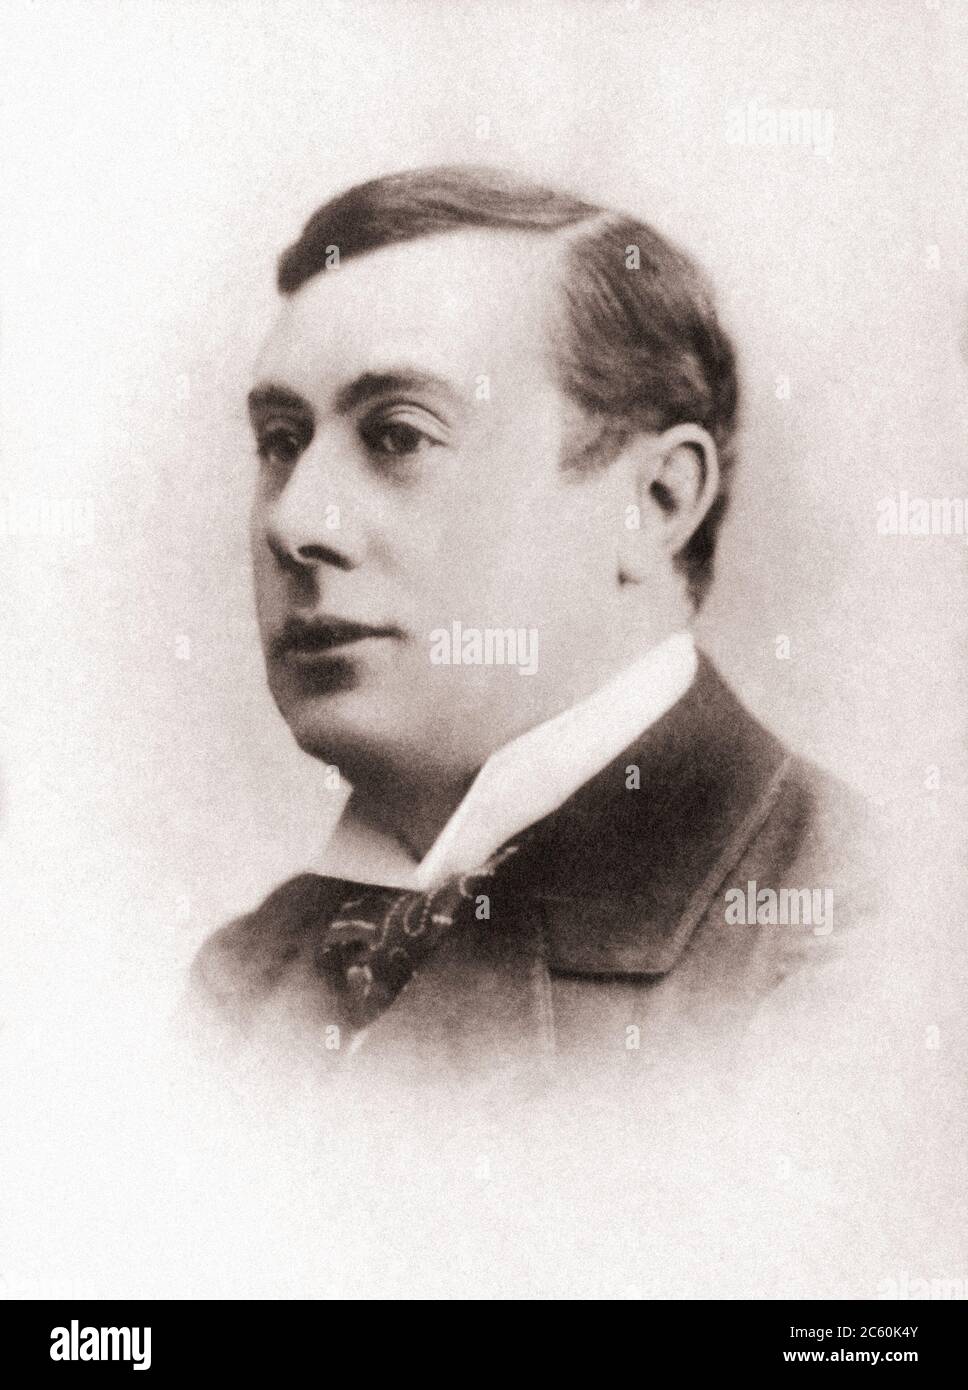 Andre Antoine (1858 – 1943) war ein französischer Schauspieler, Theatermanager, Regisseur, Autor und Kritiker, der als Vater der modernen mise en scèn gilt Stockfoto